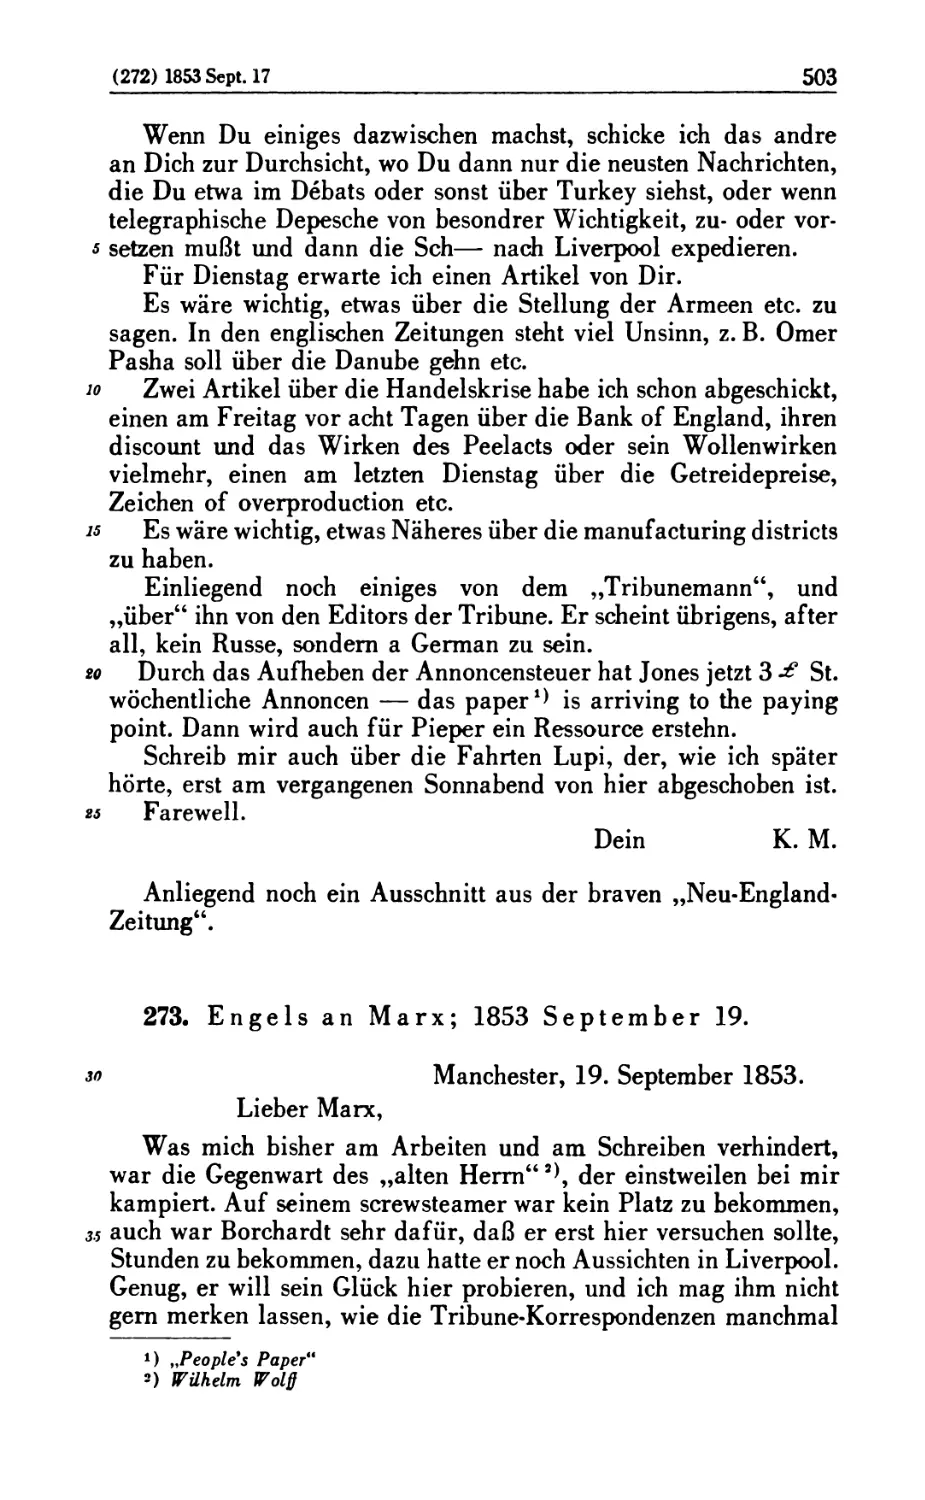 273. Engels an Marx; 1853 September 19